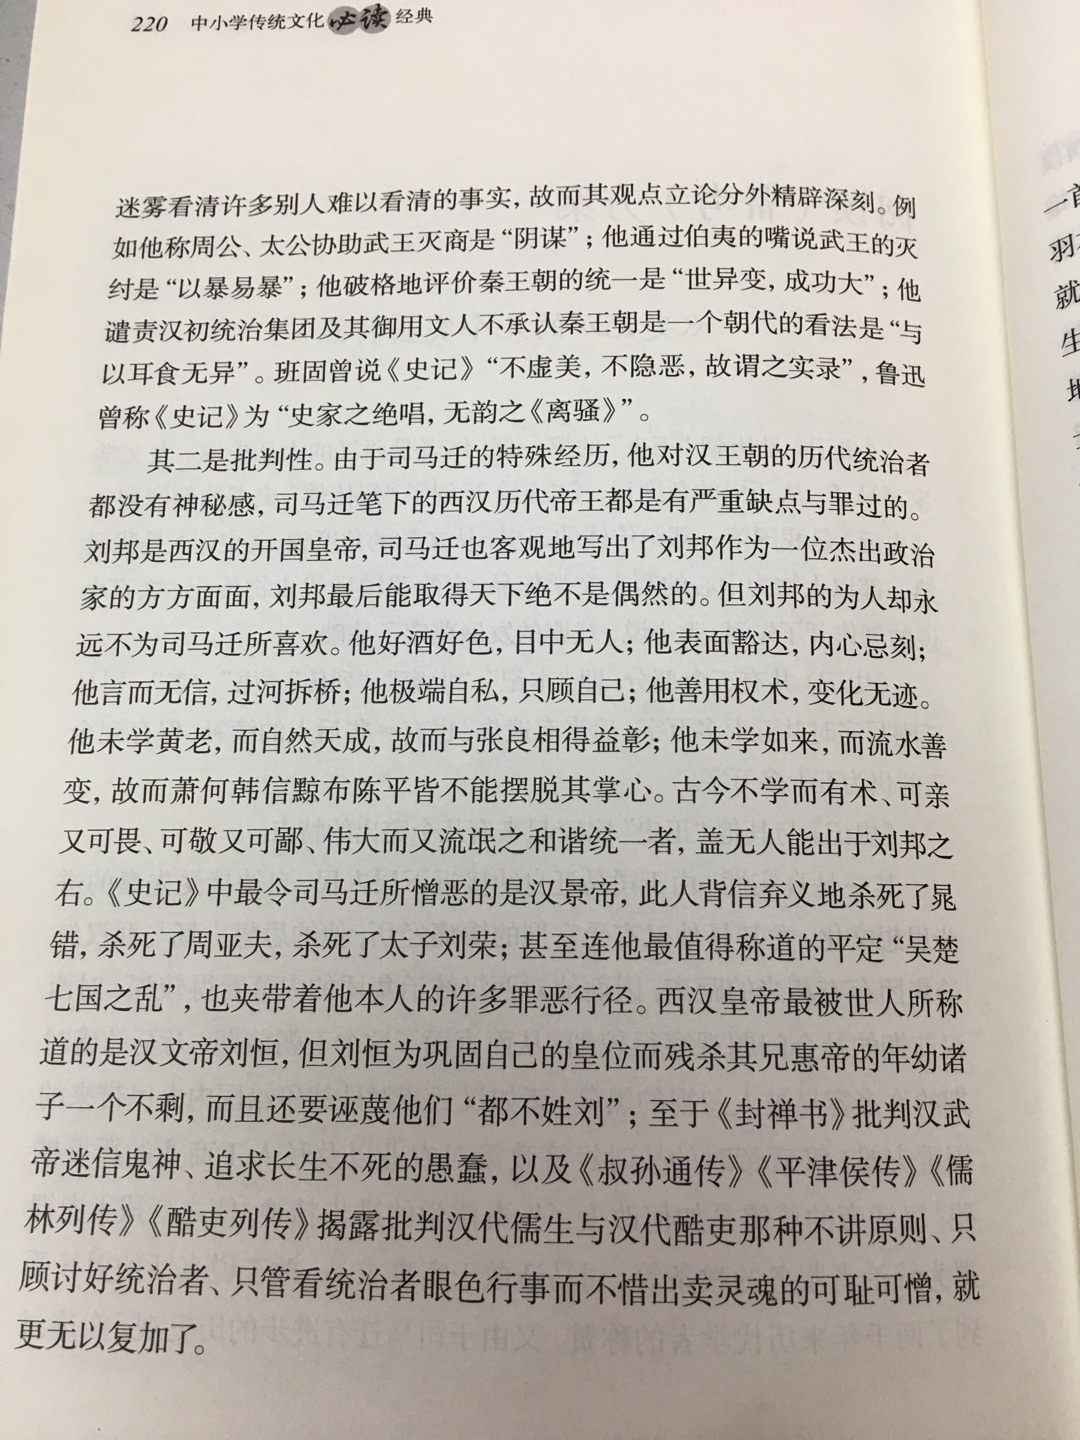 中华书局这套书基本都买了，精选经典作品。